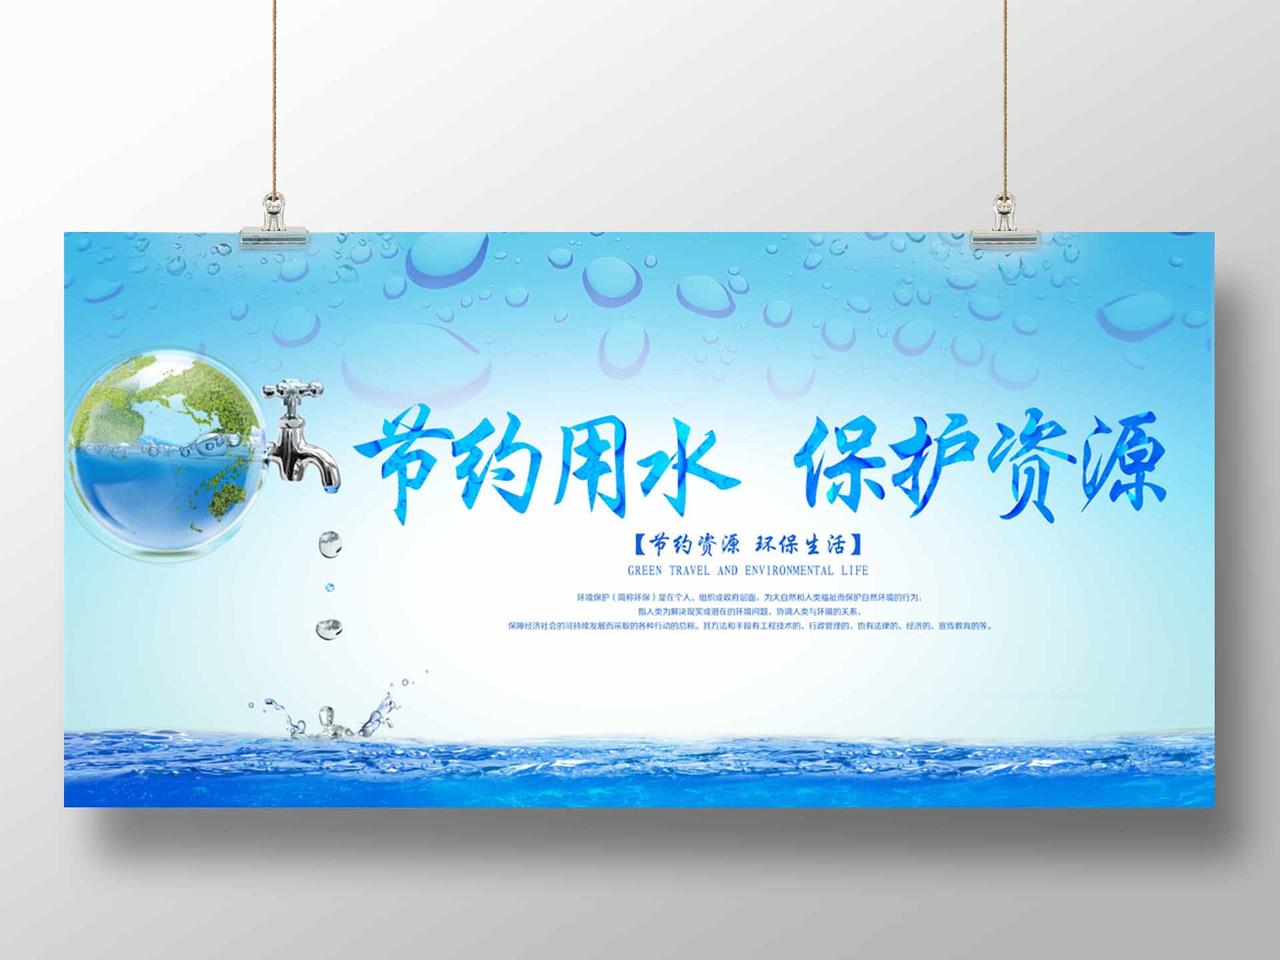 保护水资源世界水日节约用水蓝色公益展板